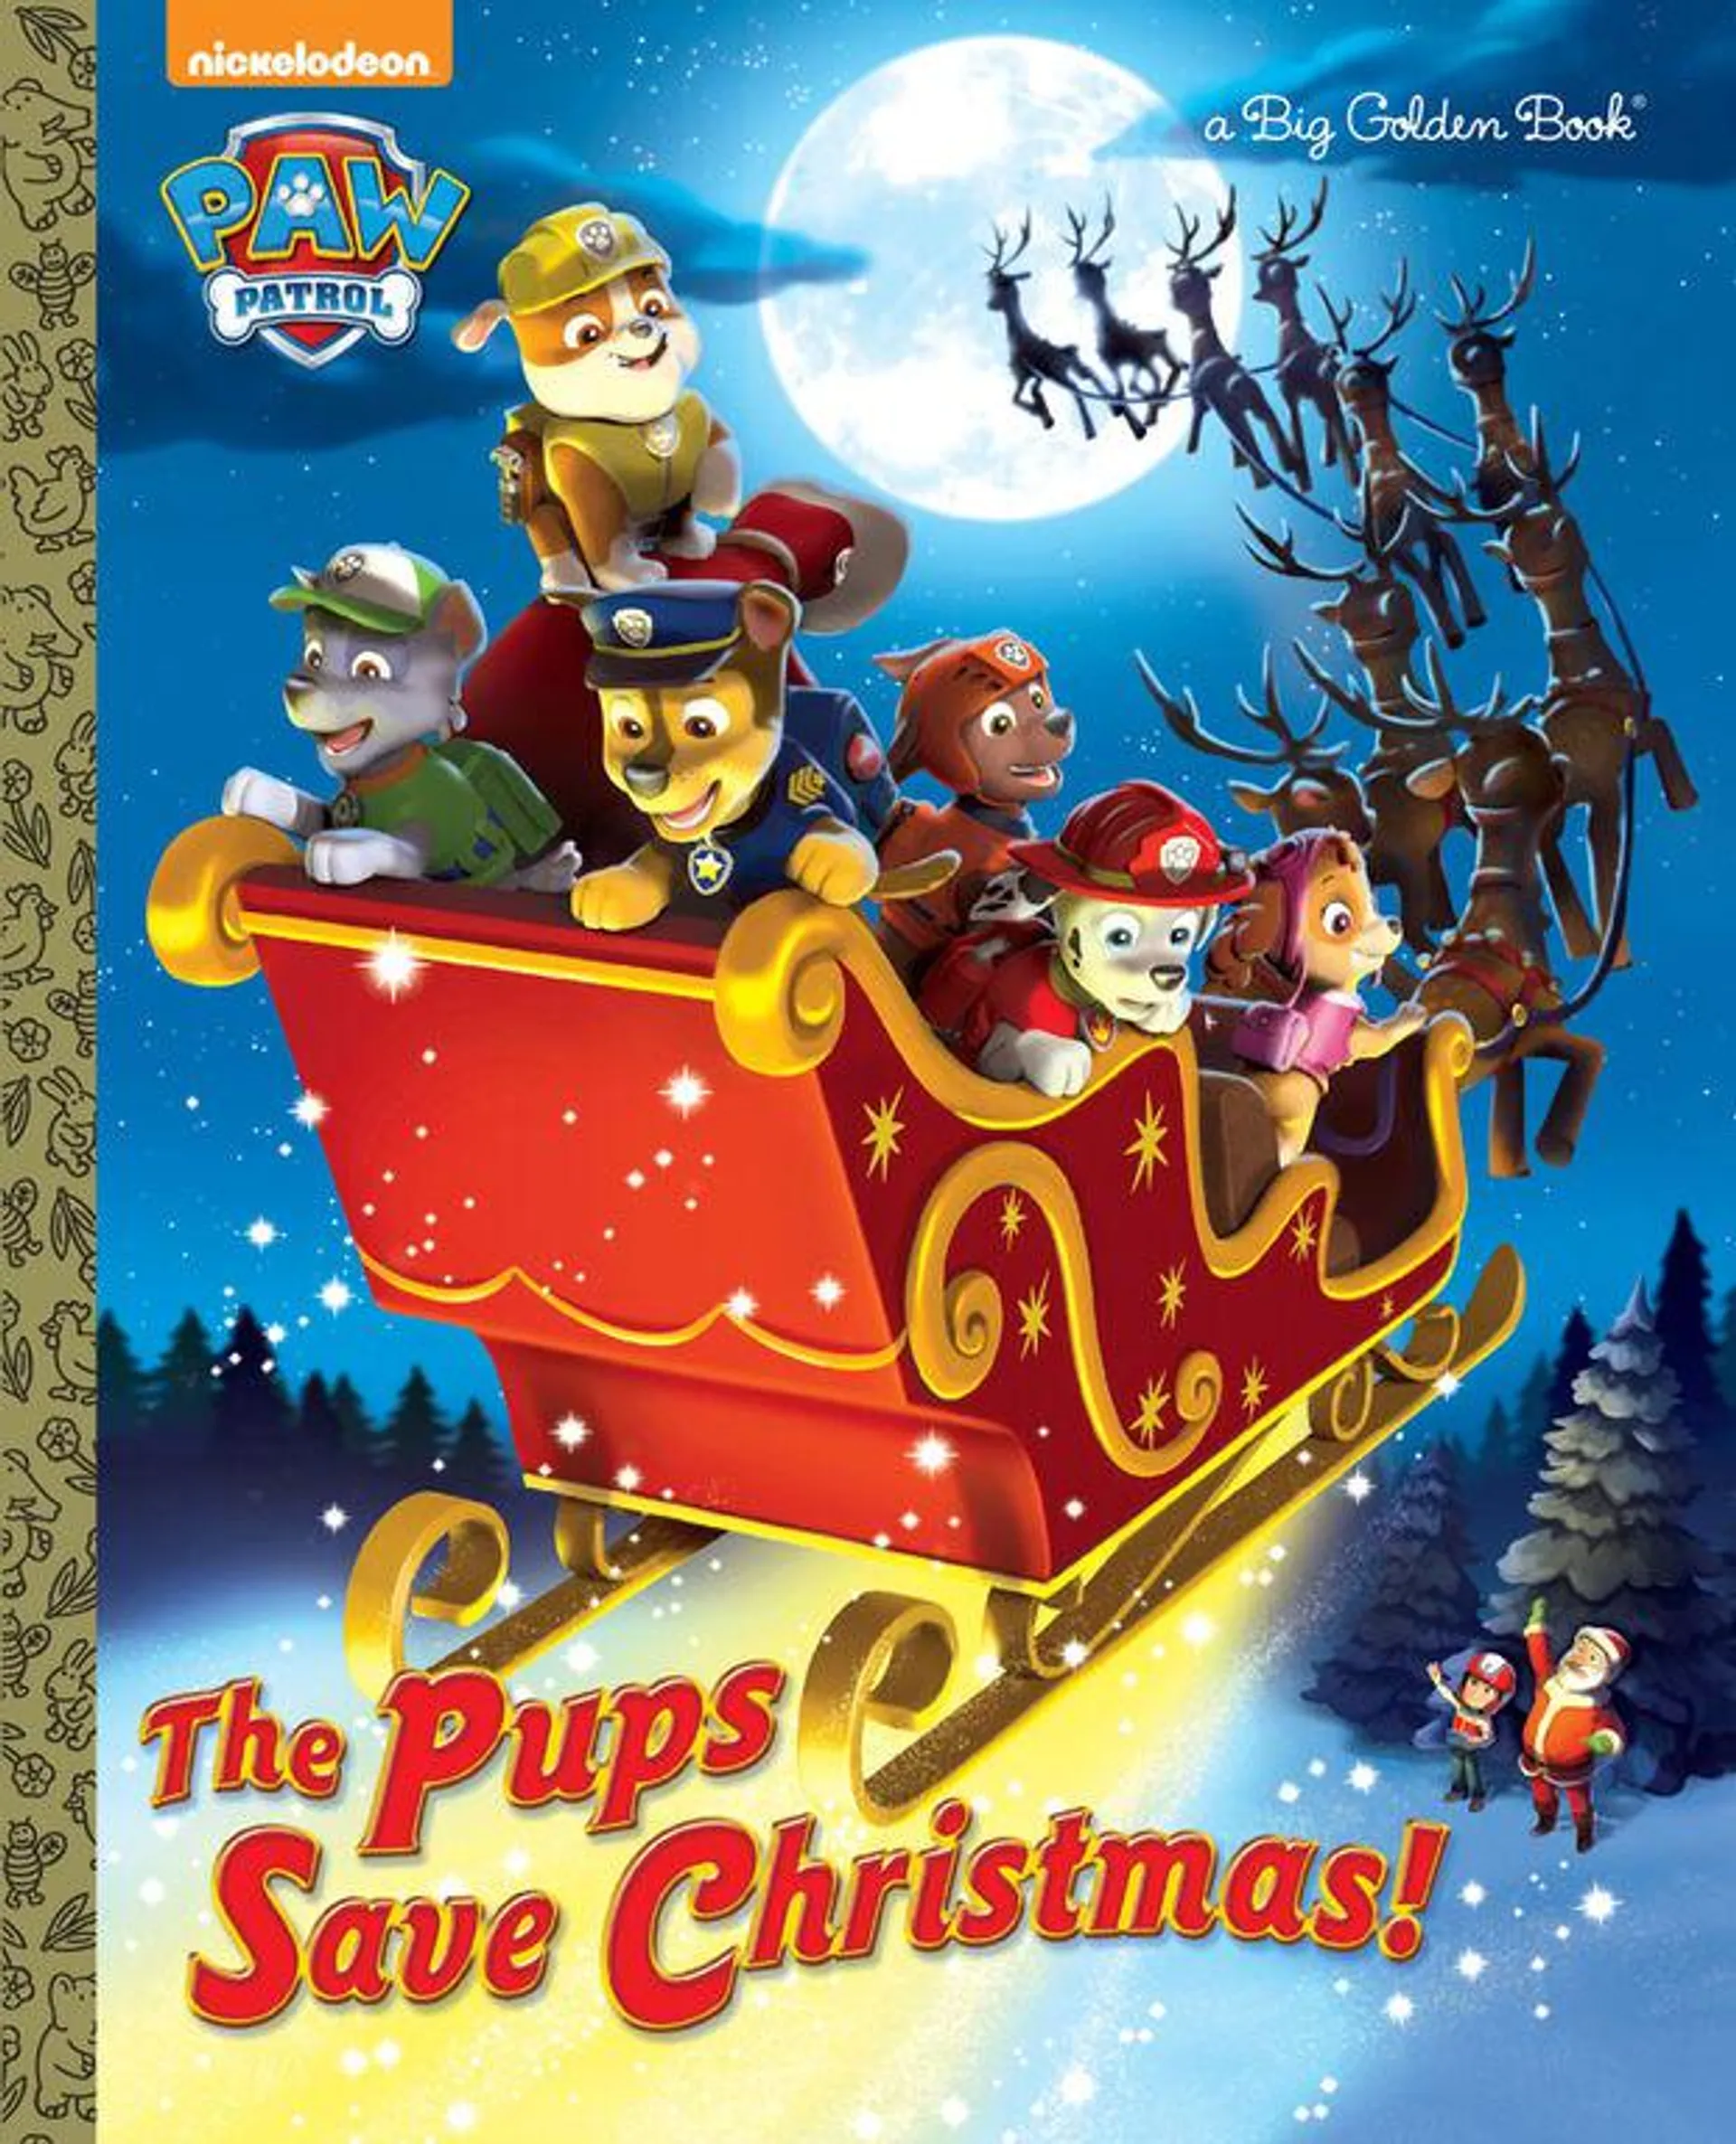 The Pups Save Christmas! (Paw Patrol) - English Edition